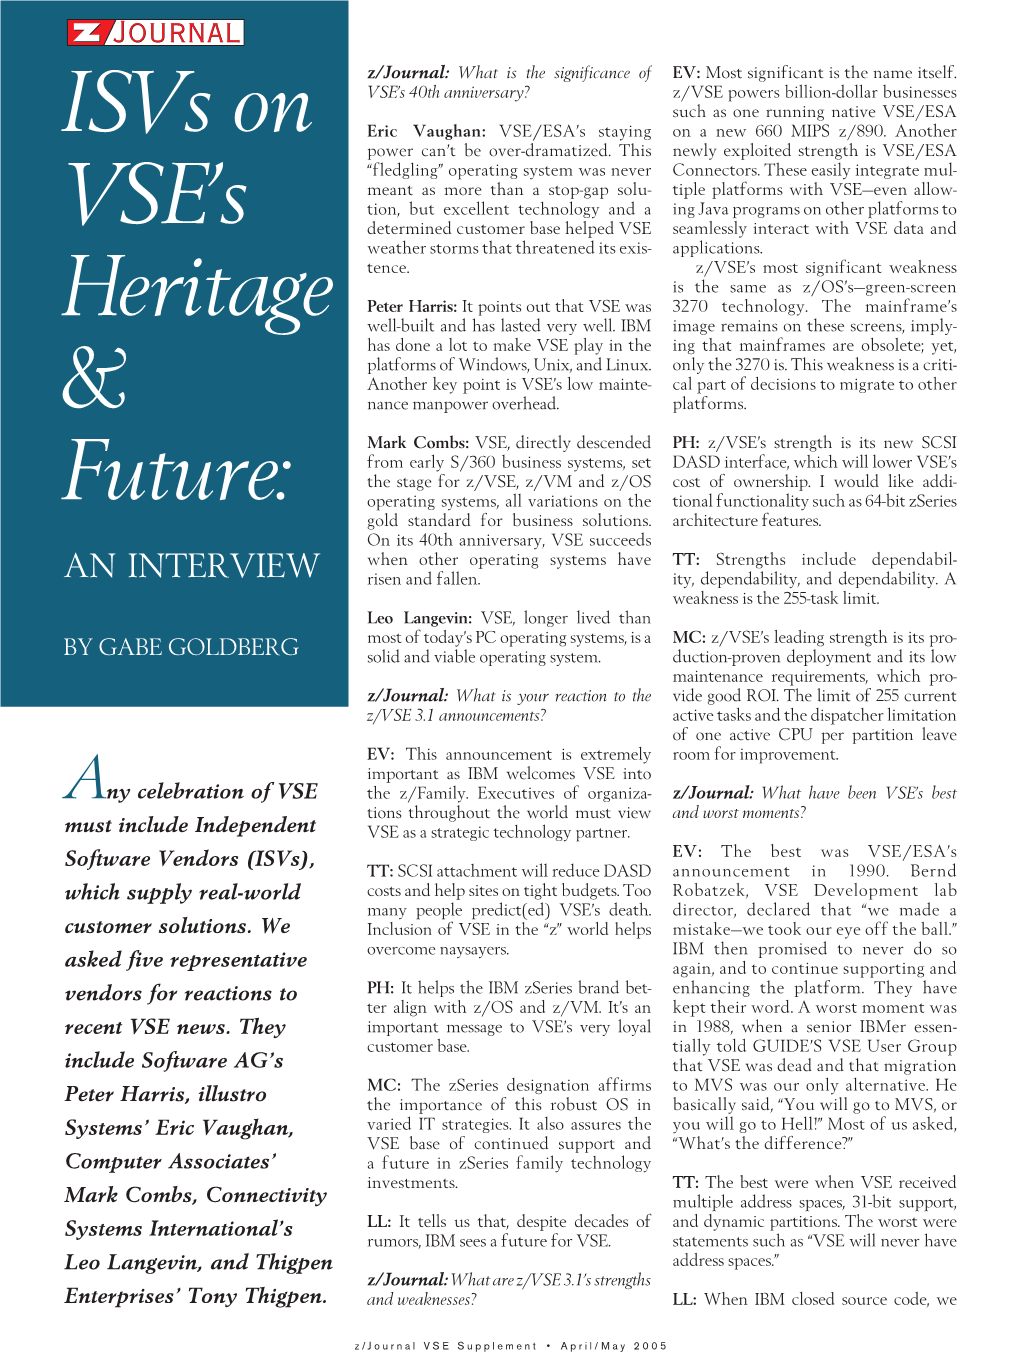 Isvs on VSE's Heritage & Future